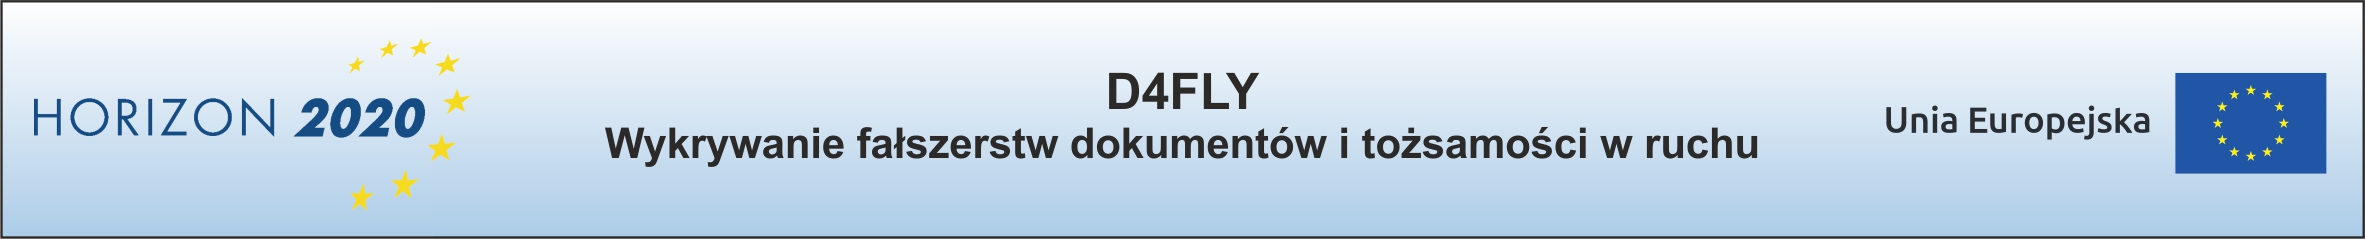 40 d4fly